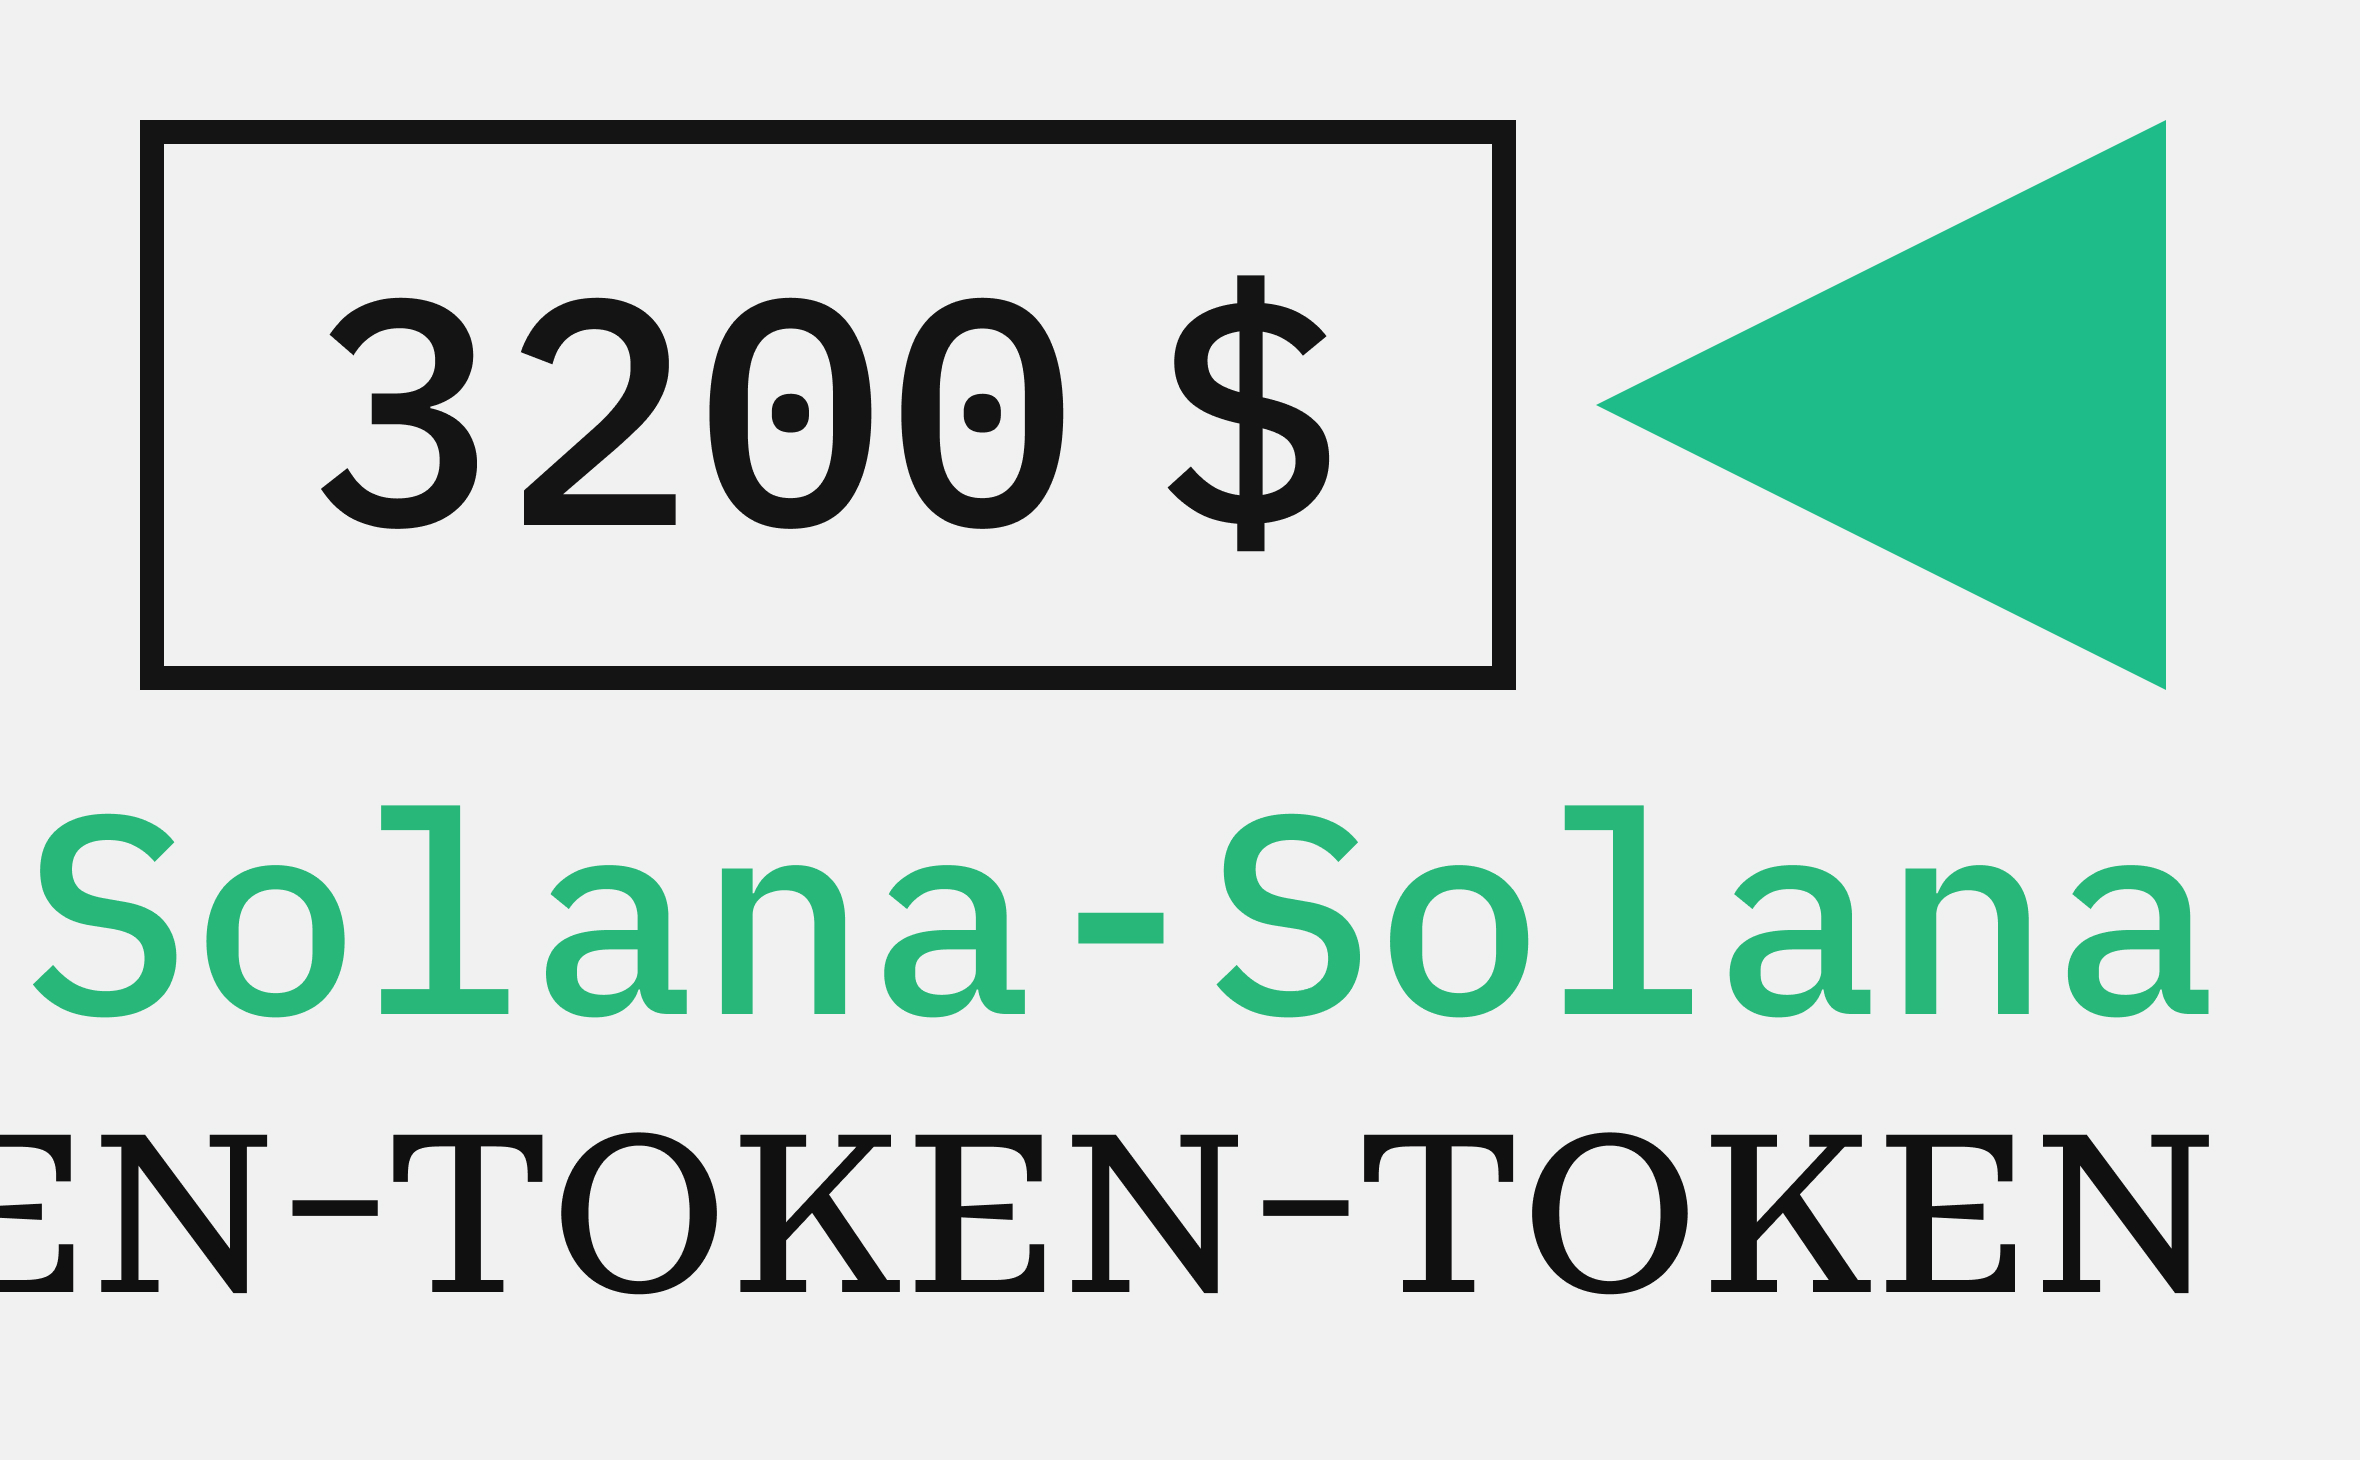 Аналитики VanEck прогнозируют, что криптовалюта Solana может вырасти до $3200 к 2030 году :: РБК.Крипто